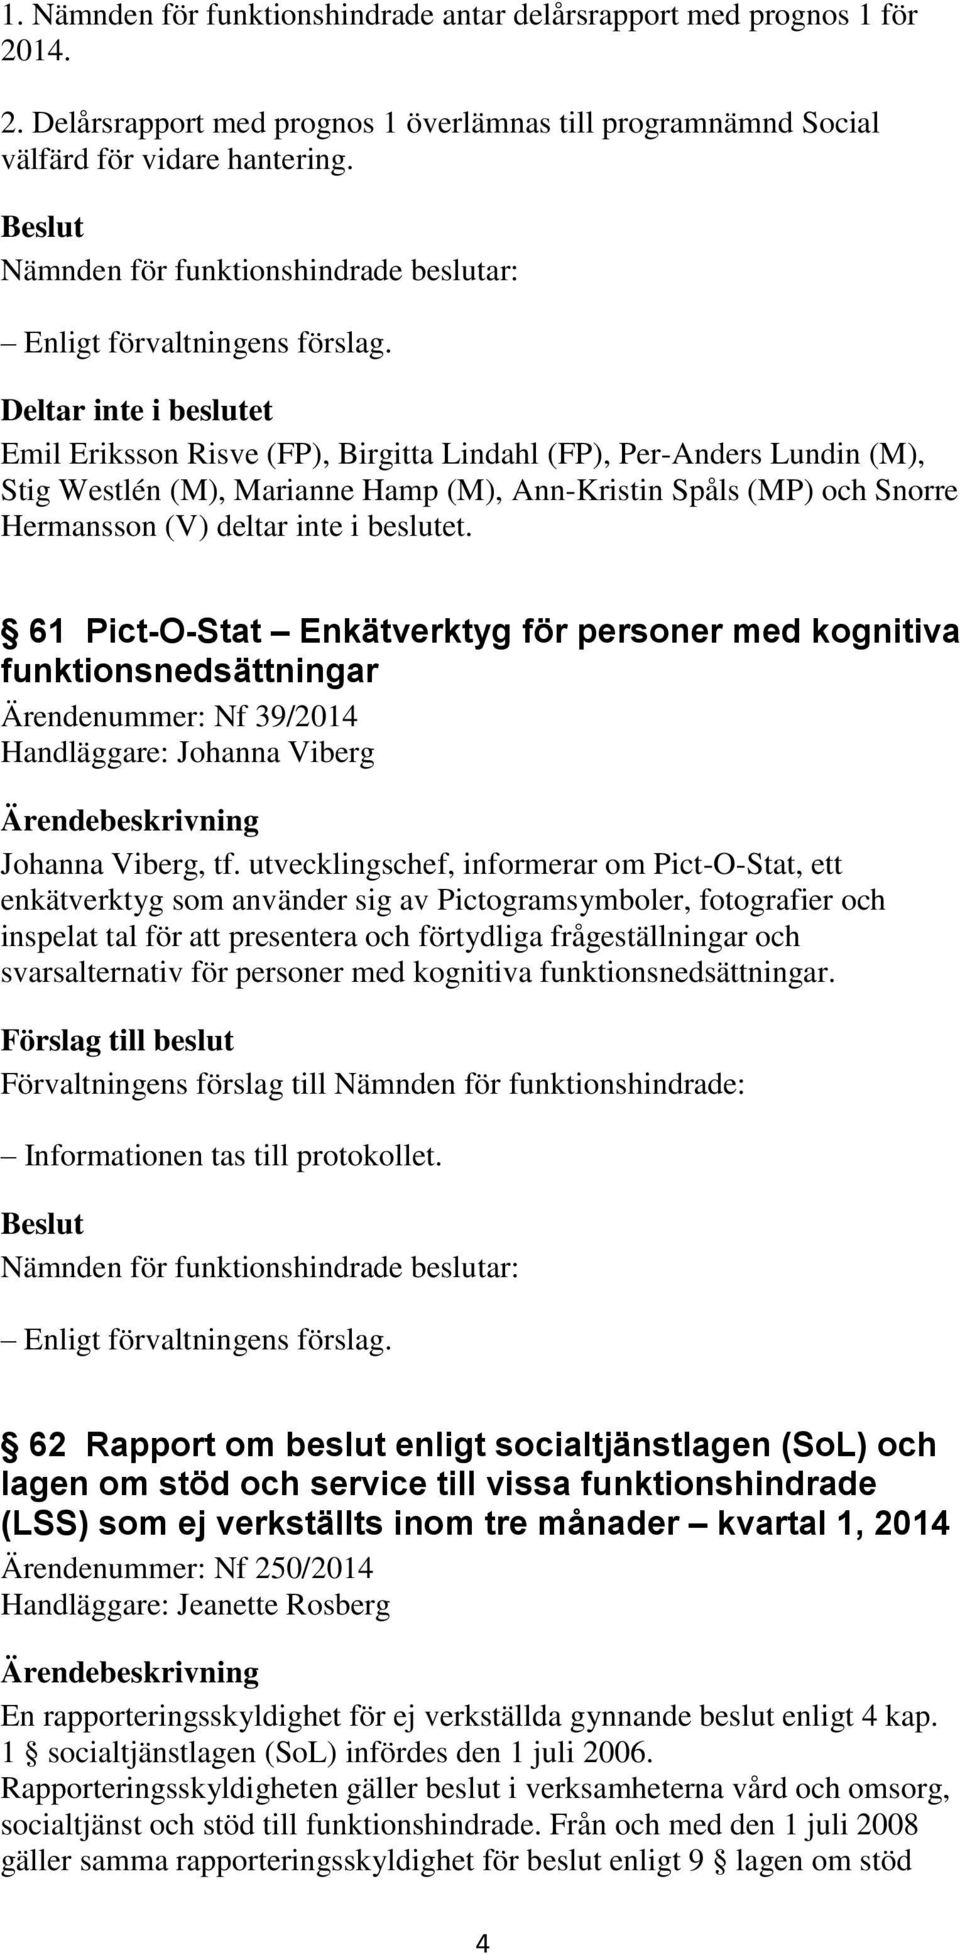 beslutet. 61 Pict-O-Stat Enkätverktyg för personer med kognitiva funktionsnedsättningar Ärendenummer: Nf 39/2014 Handläggare: Johanna Viberg Johanna Viberg, tf.